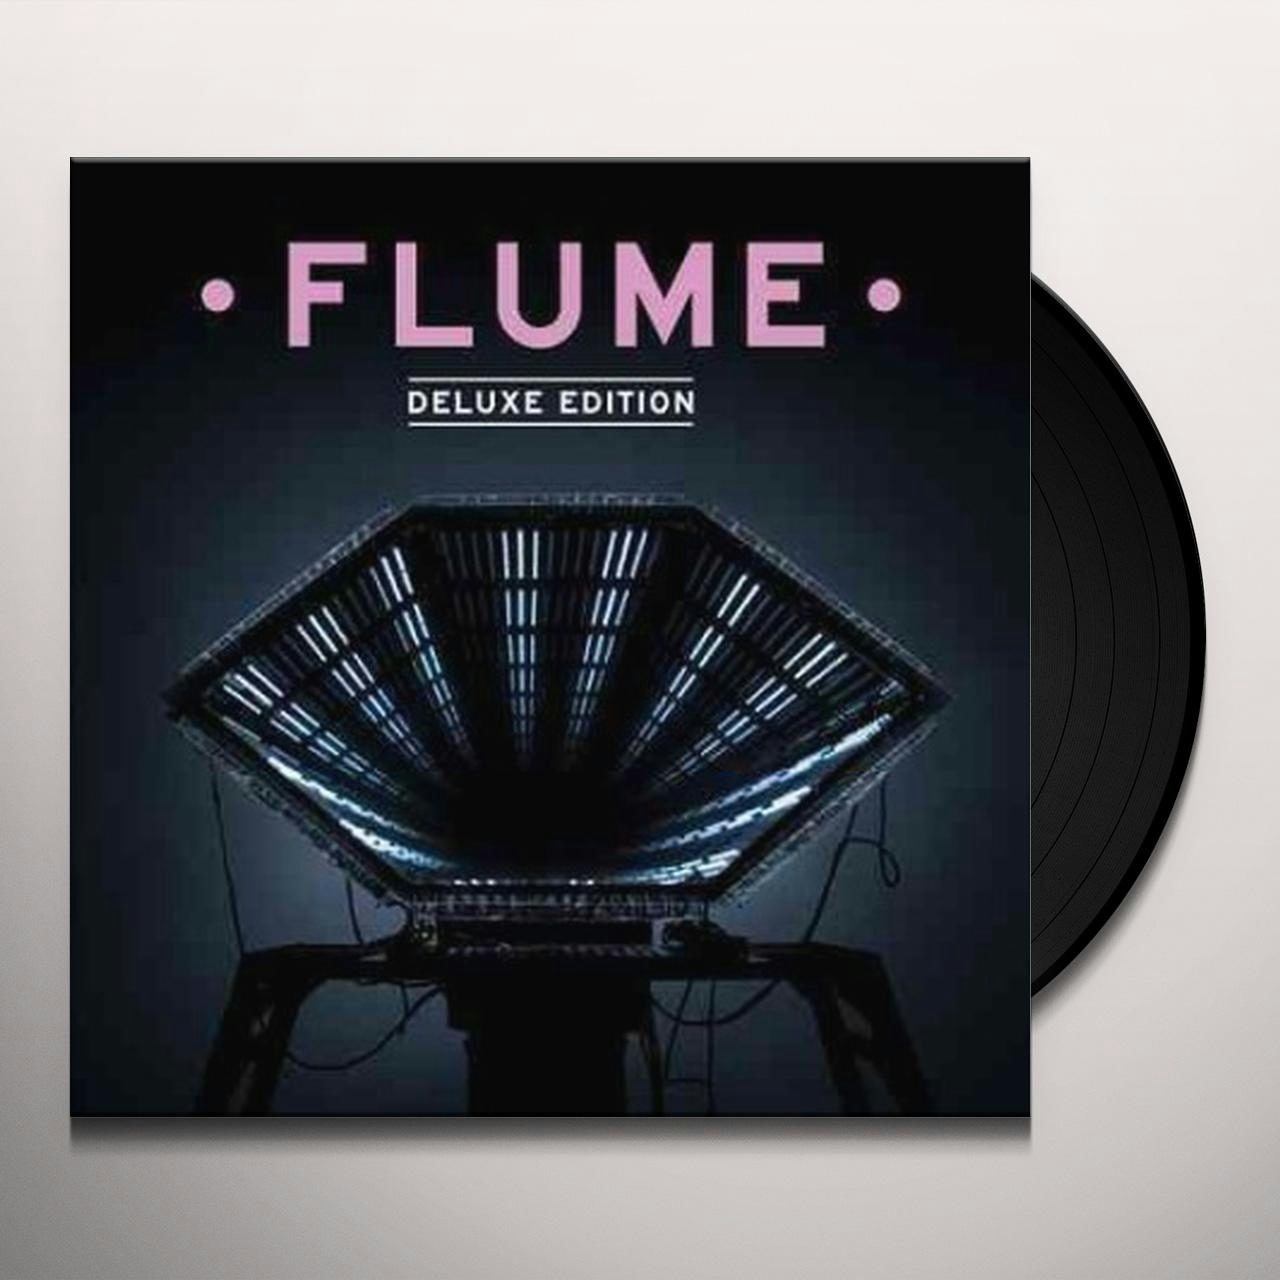 専門店では (Mixtape) Flume Is This Hi LP 限定 レコード 洋楽